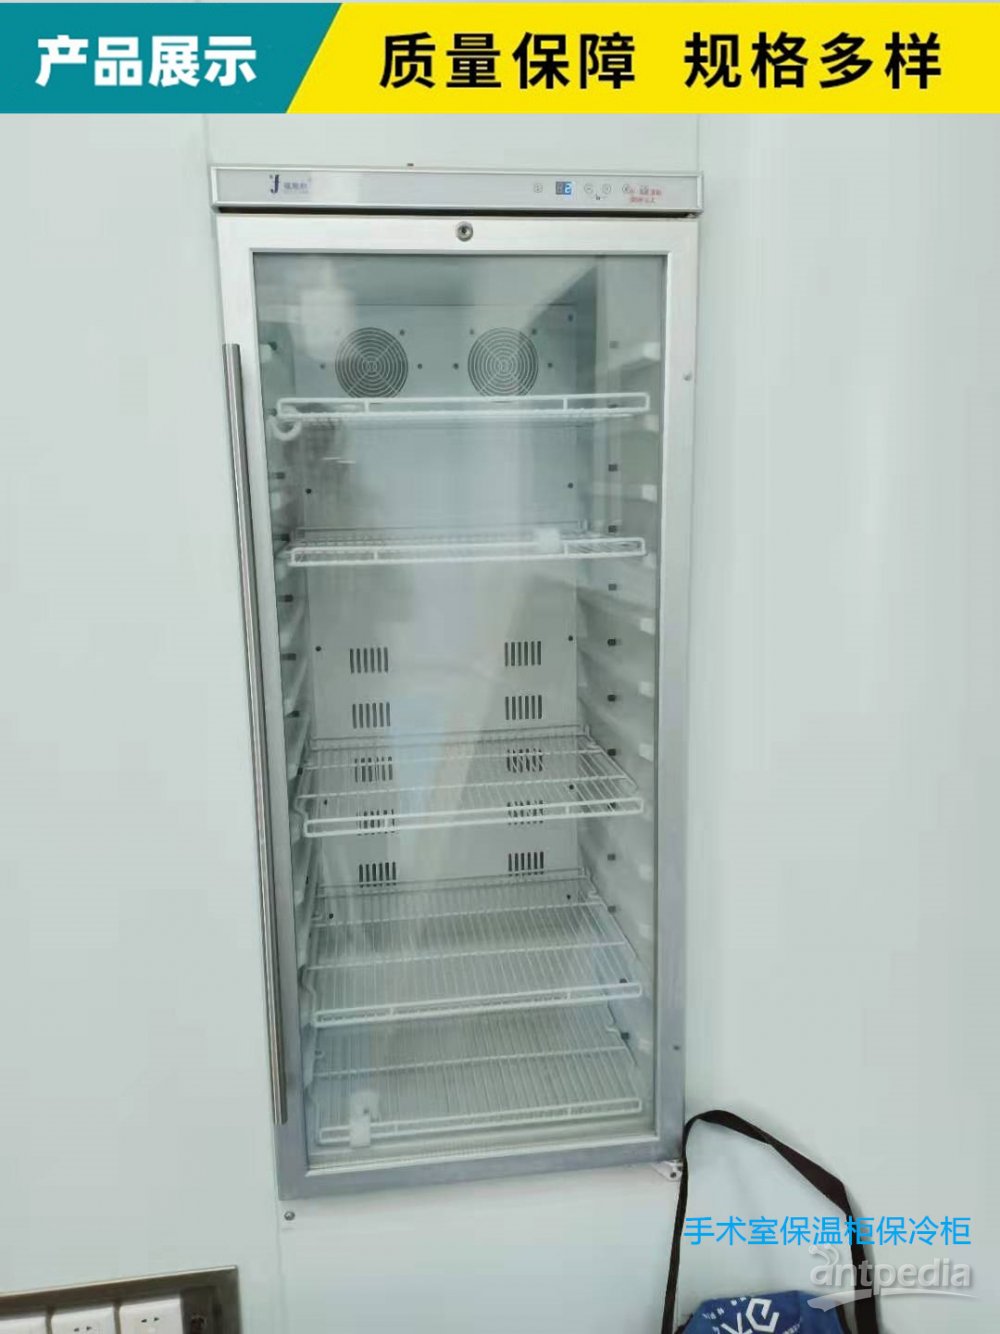 与墙齐平式DNA实验室冰箱 嵌入式保温柜 烘干箱